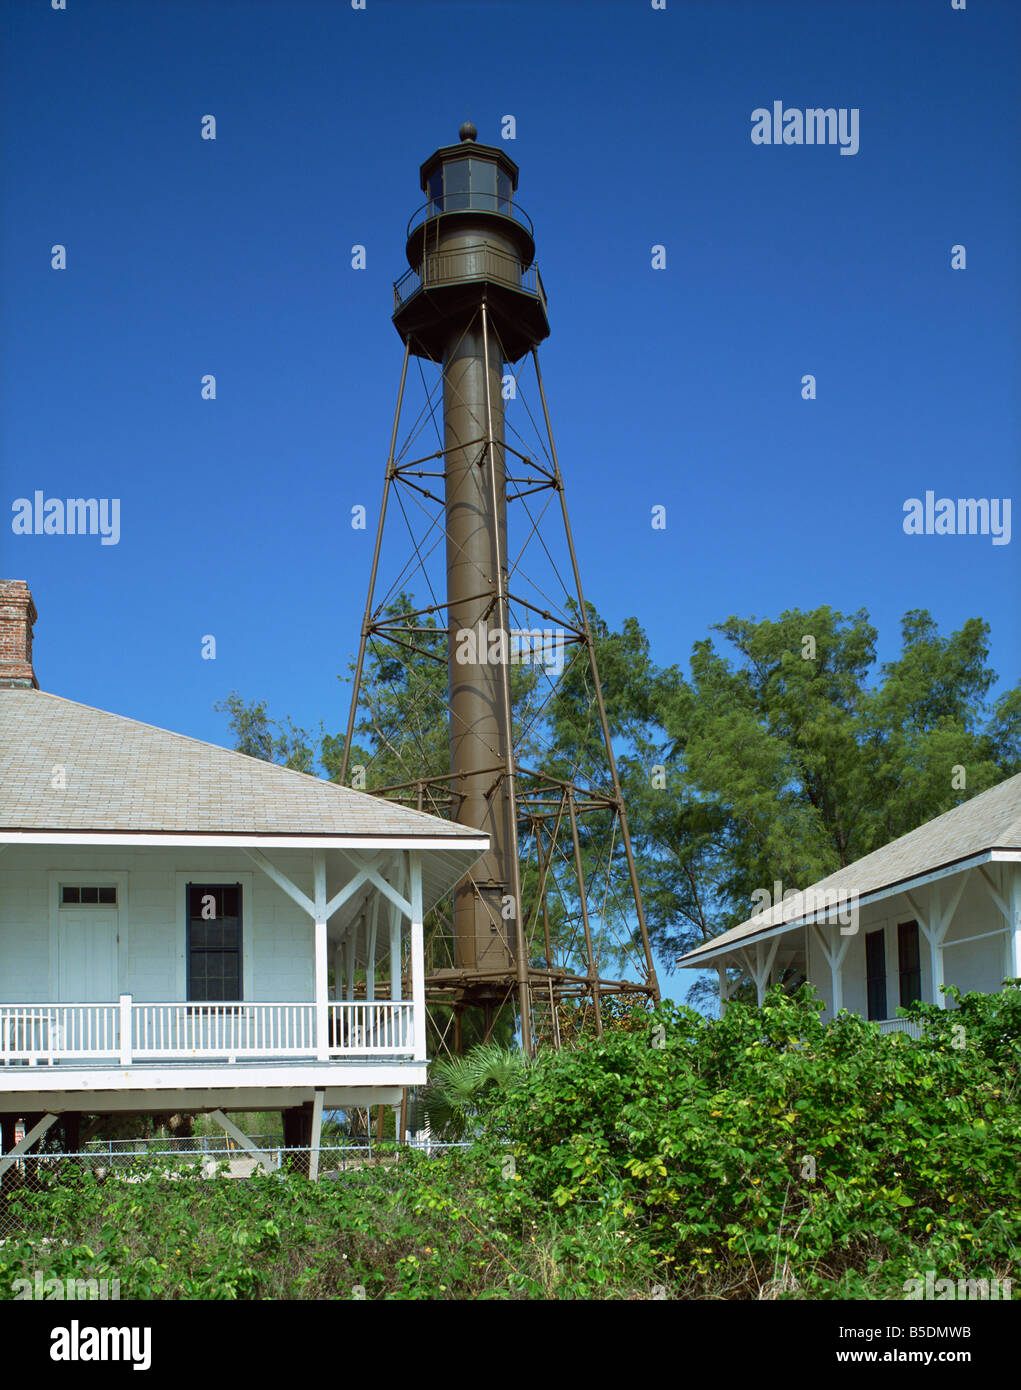 Leuchtturm von 1884 Sanibel Island Florida Vereinigte Staaten von Amerika Nordamerika dating Stockfoto